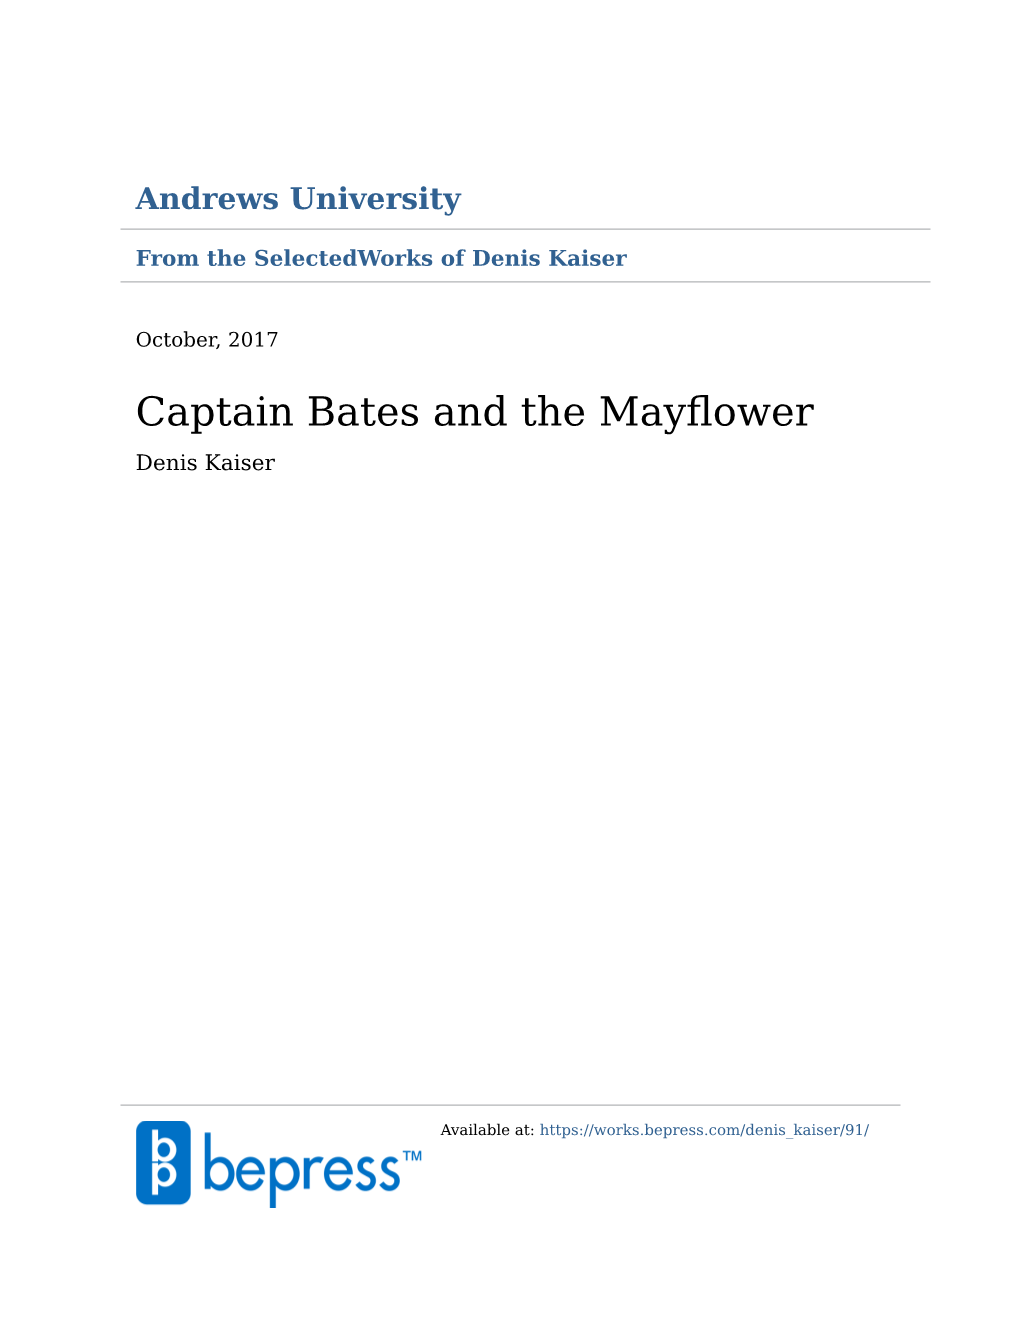 Captain Bates and the Mayflower Denis Kaiser